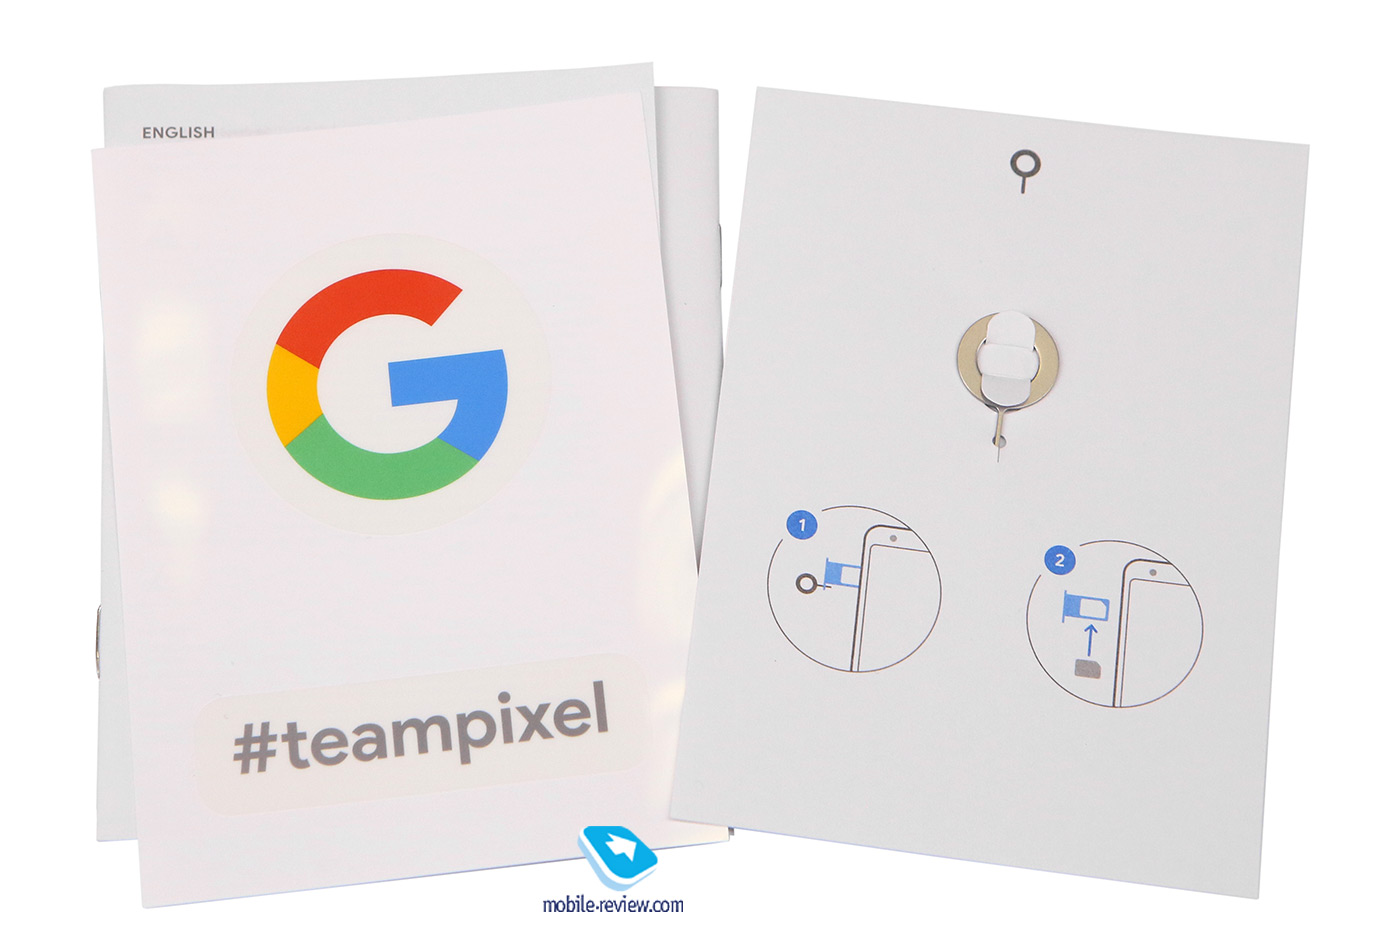 Обзор смартфона Google Pixel 3a XL